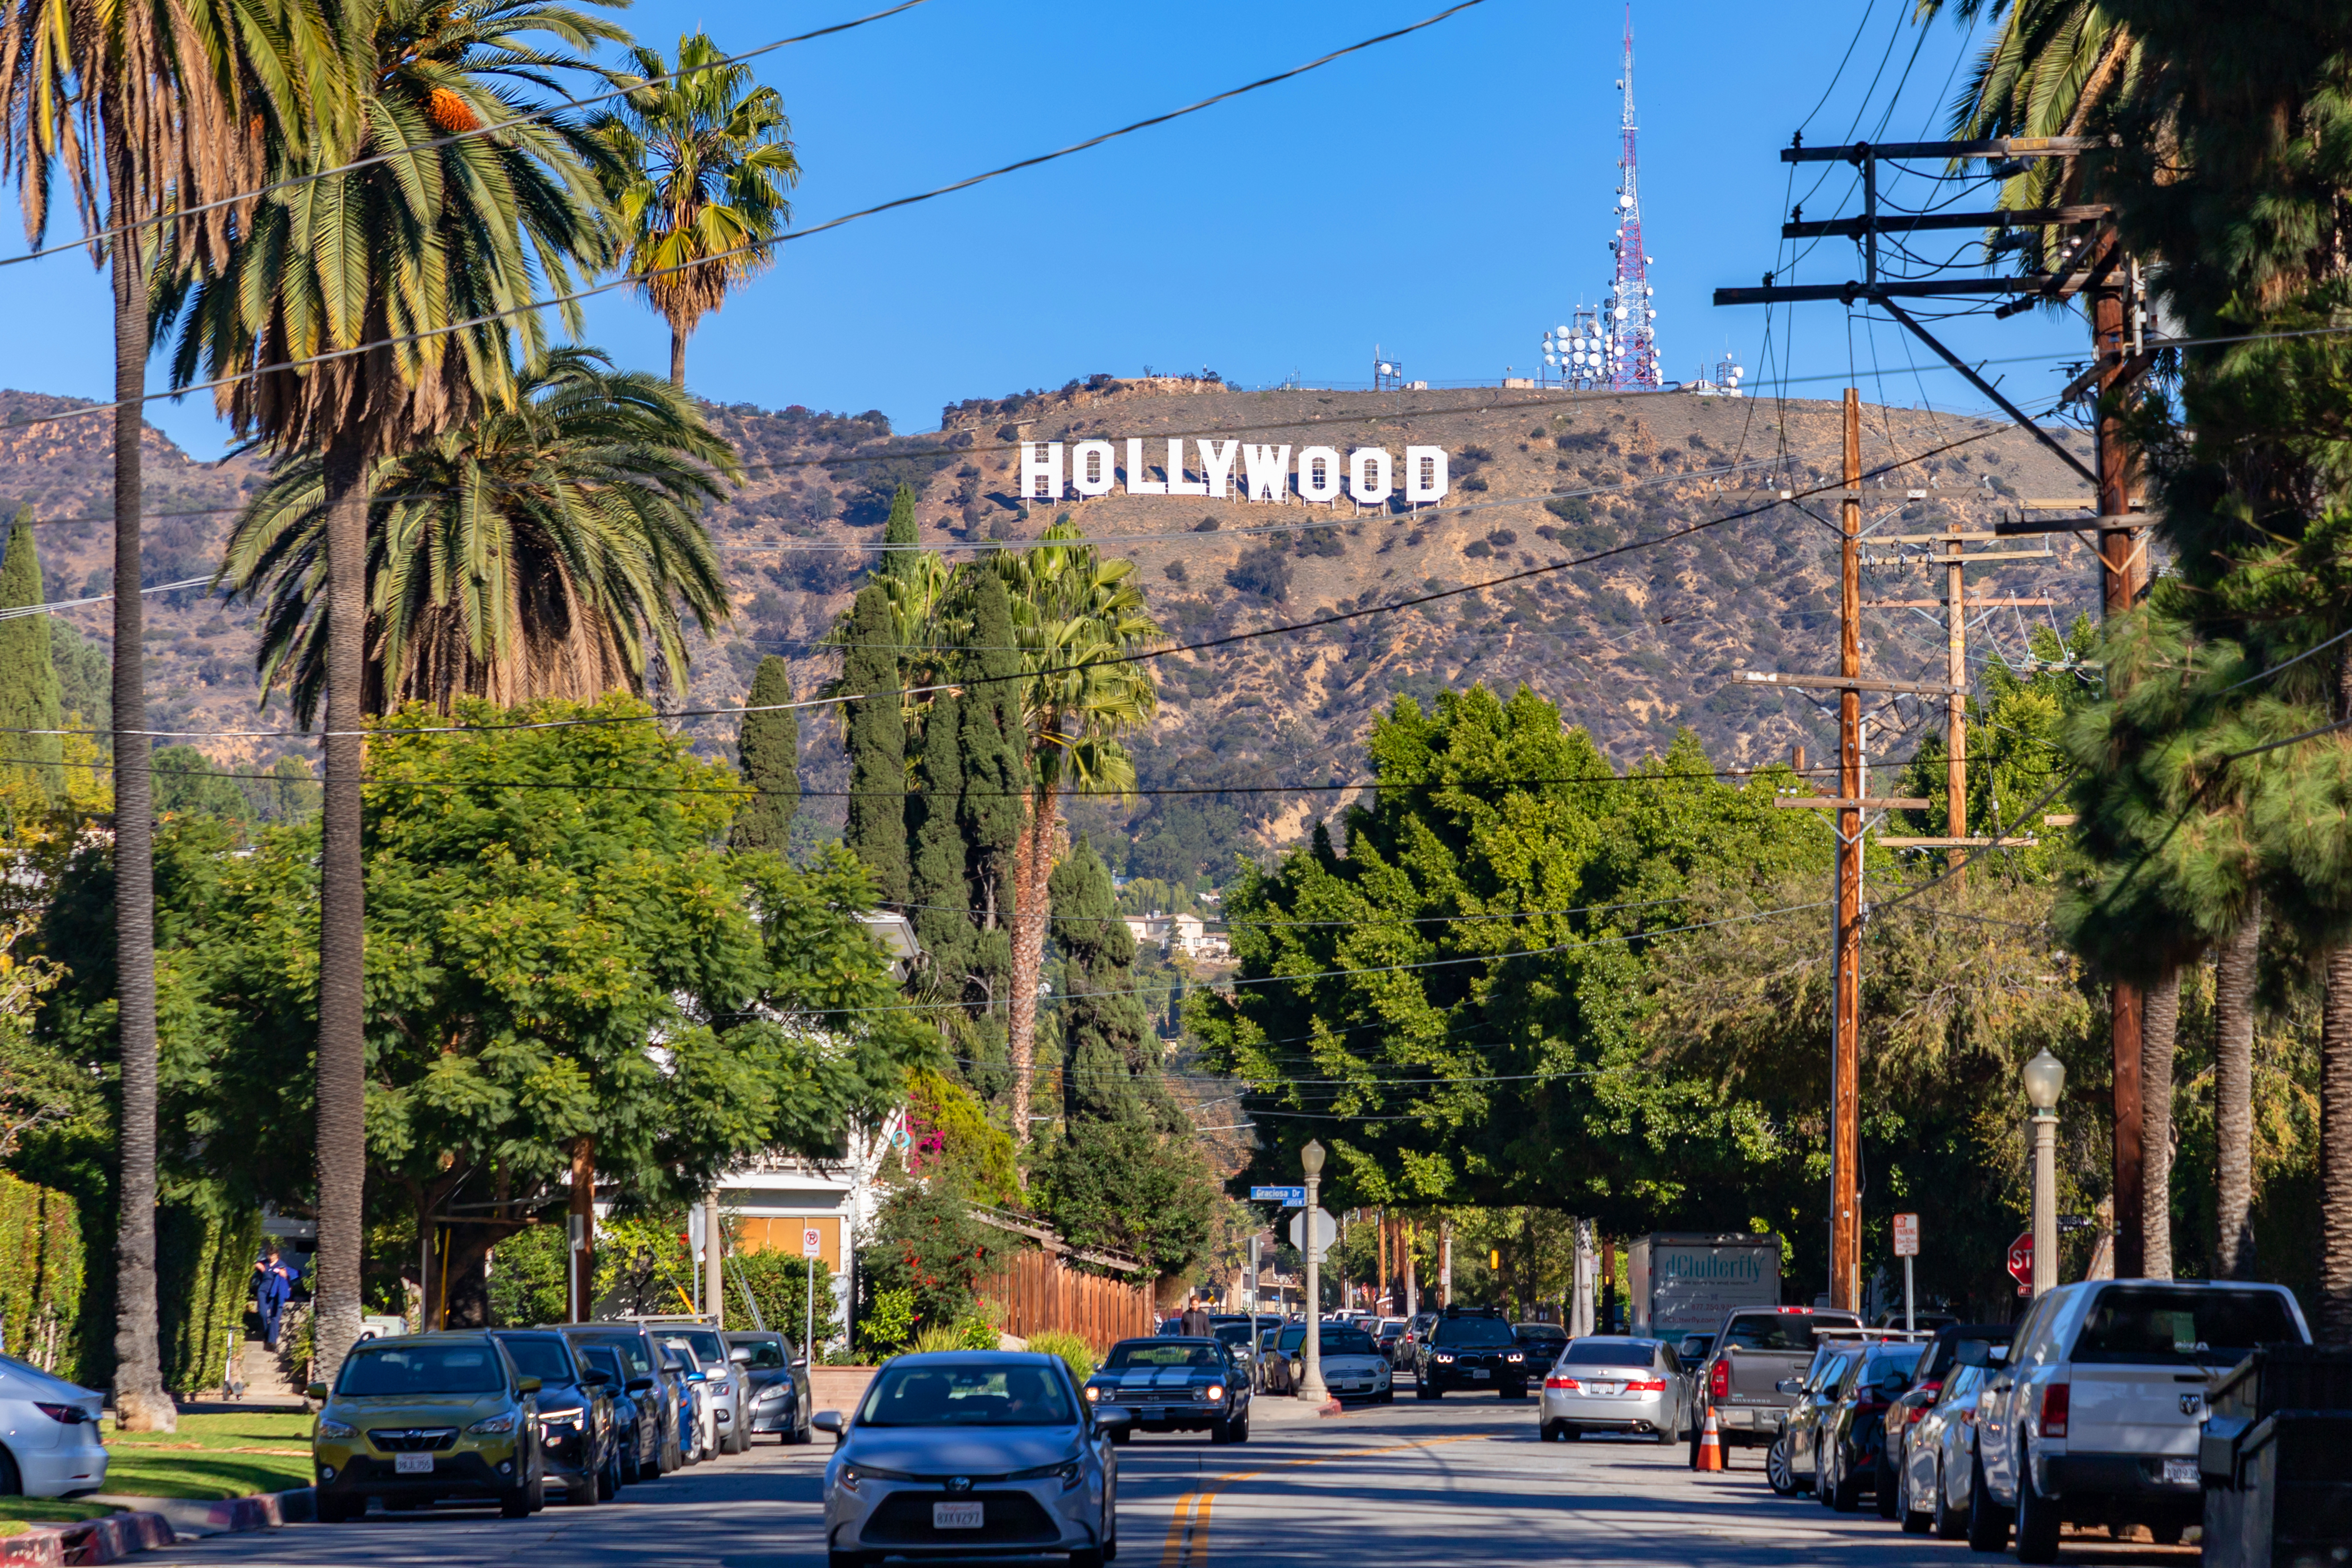 Une route avec des voitures et le panneau Hollywood au loin